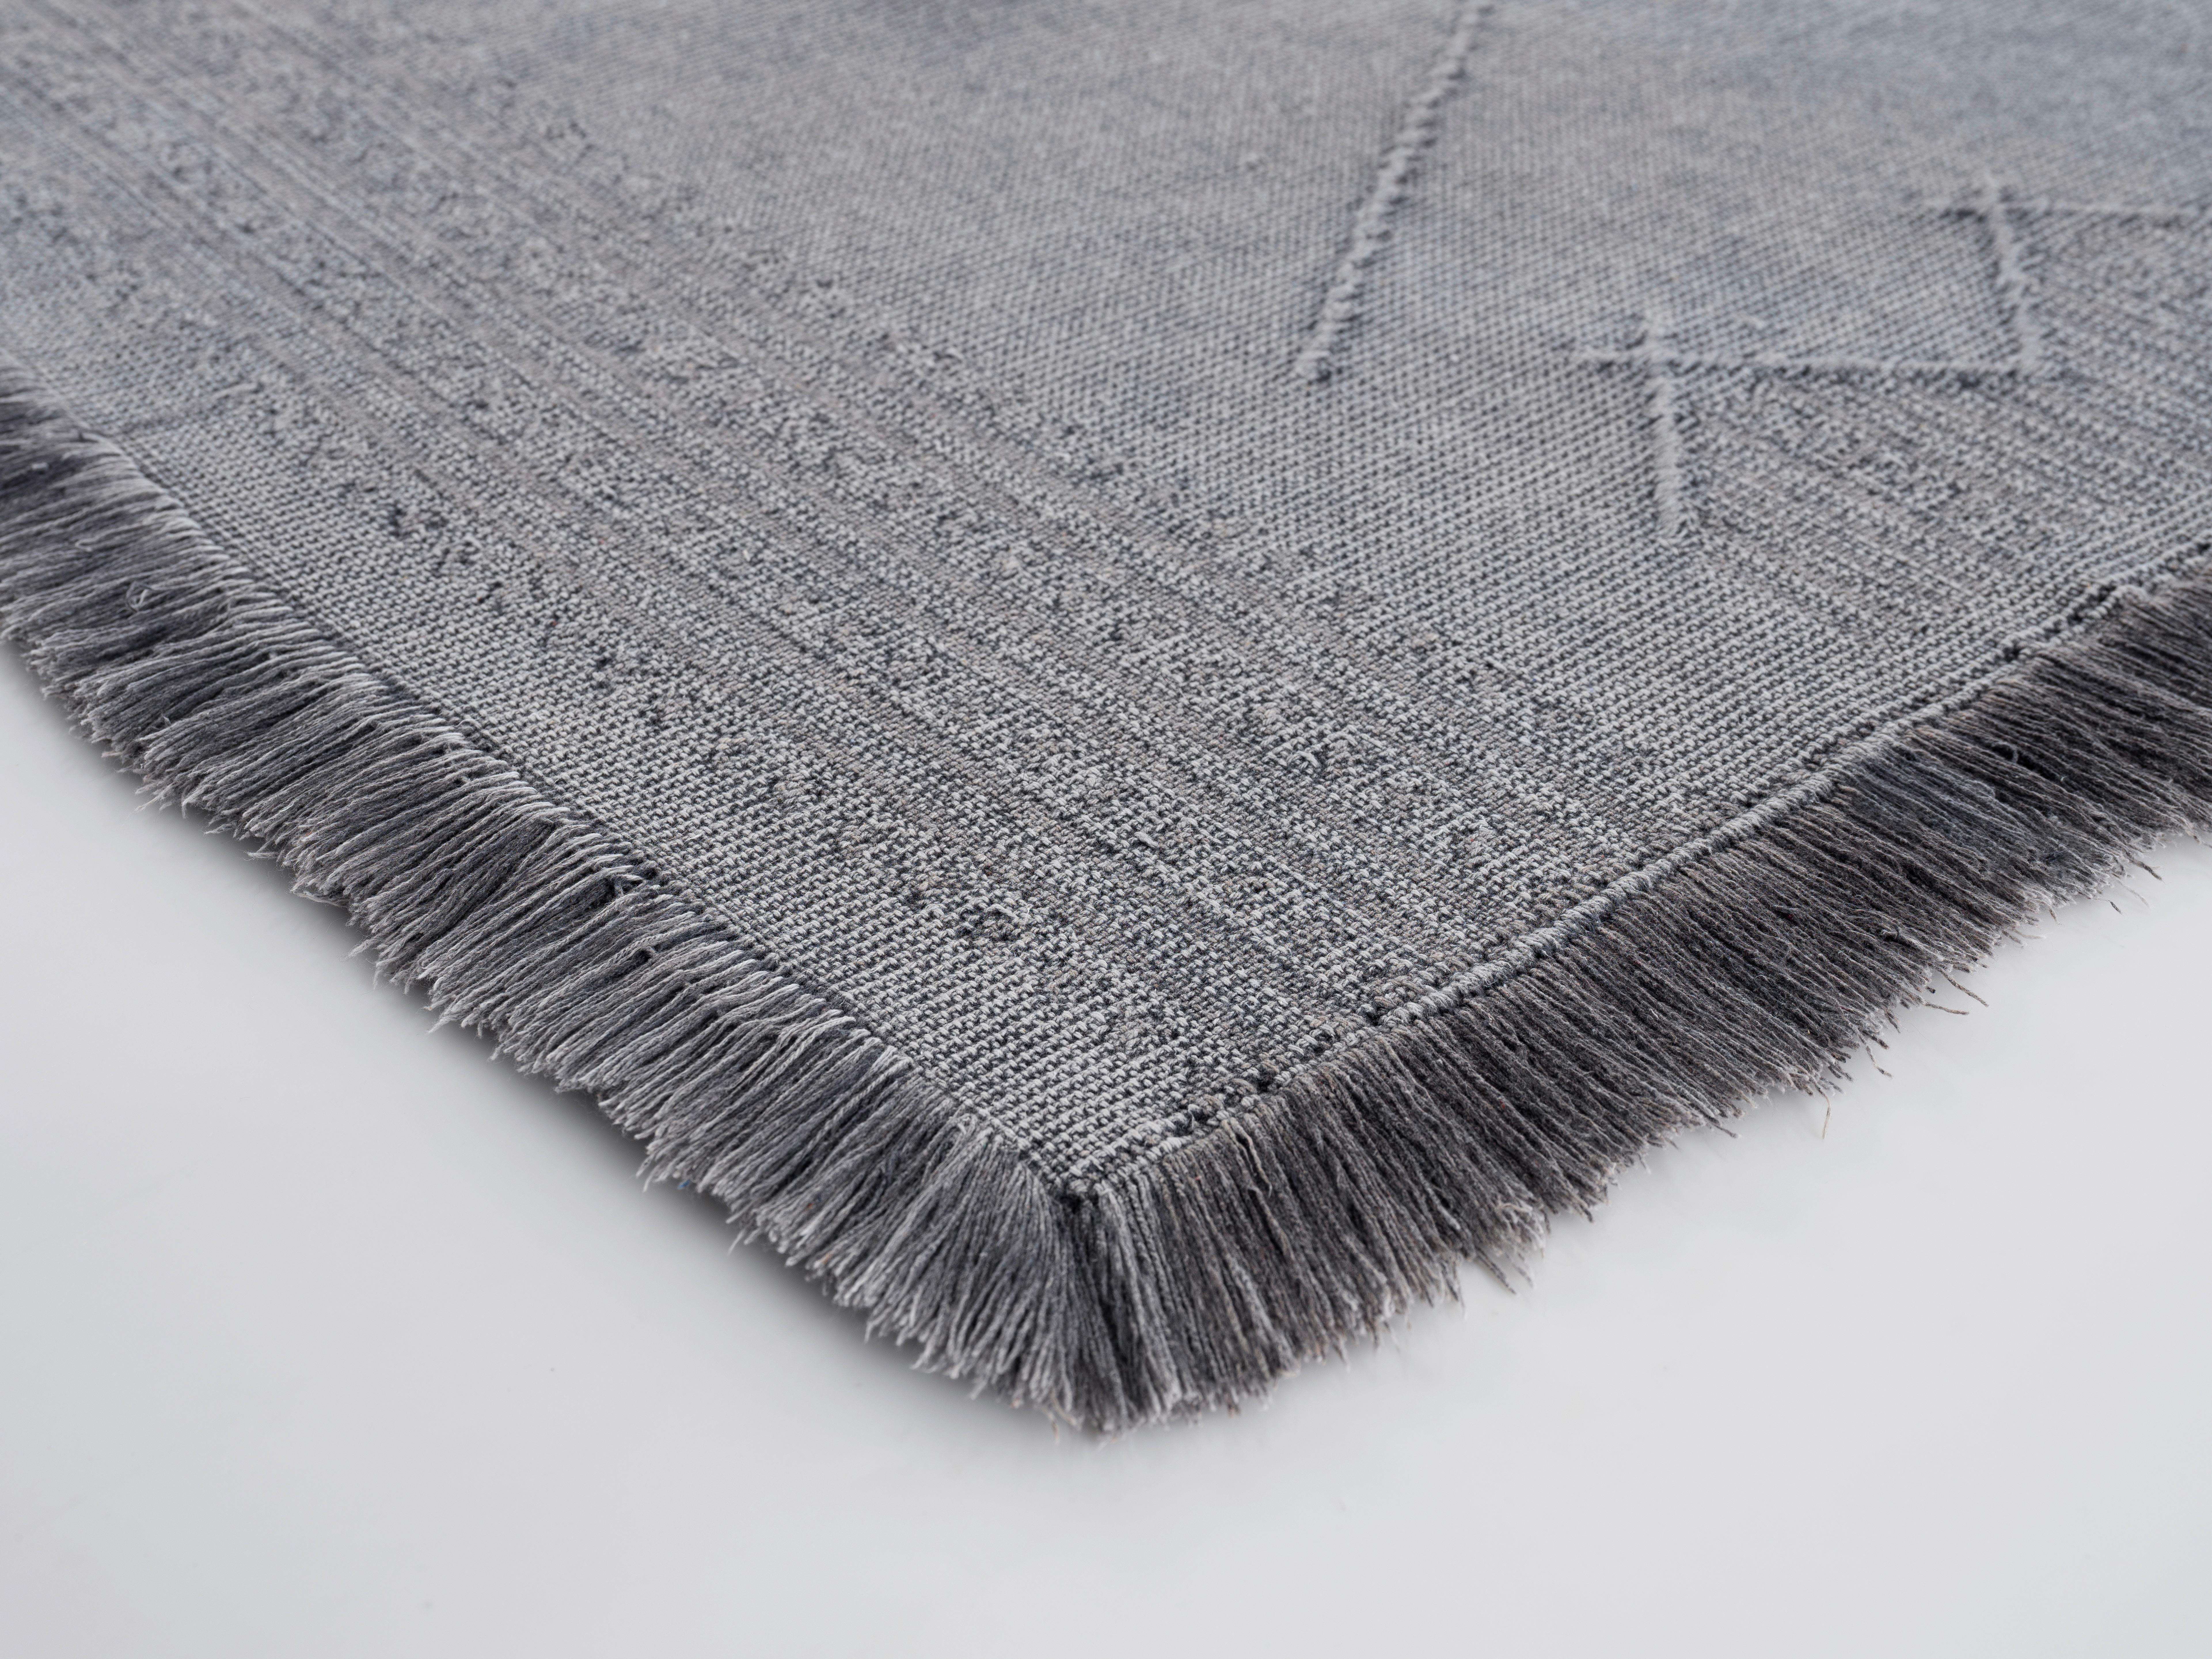 Ročno Tkana Preproga Monaco 2 - siva, tekstil (120/170cm) - Modern Living